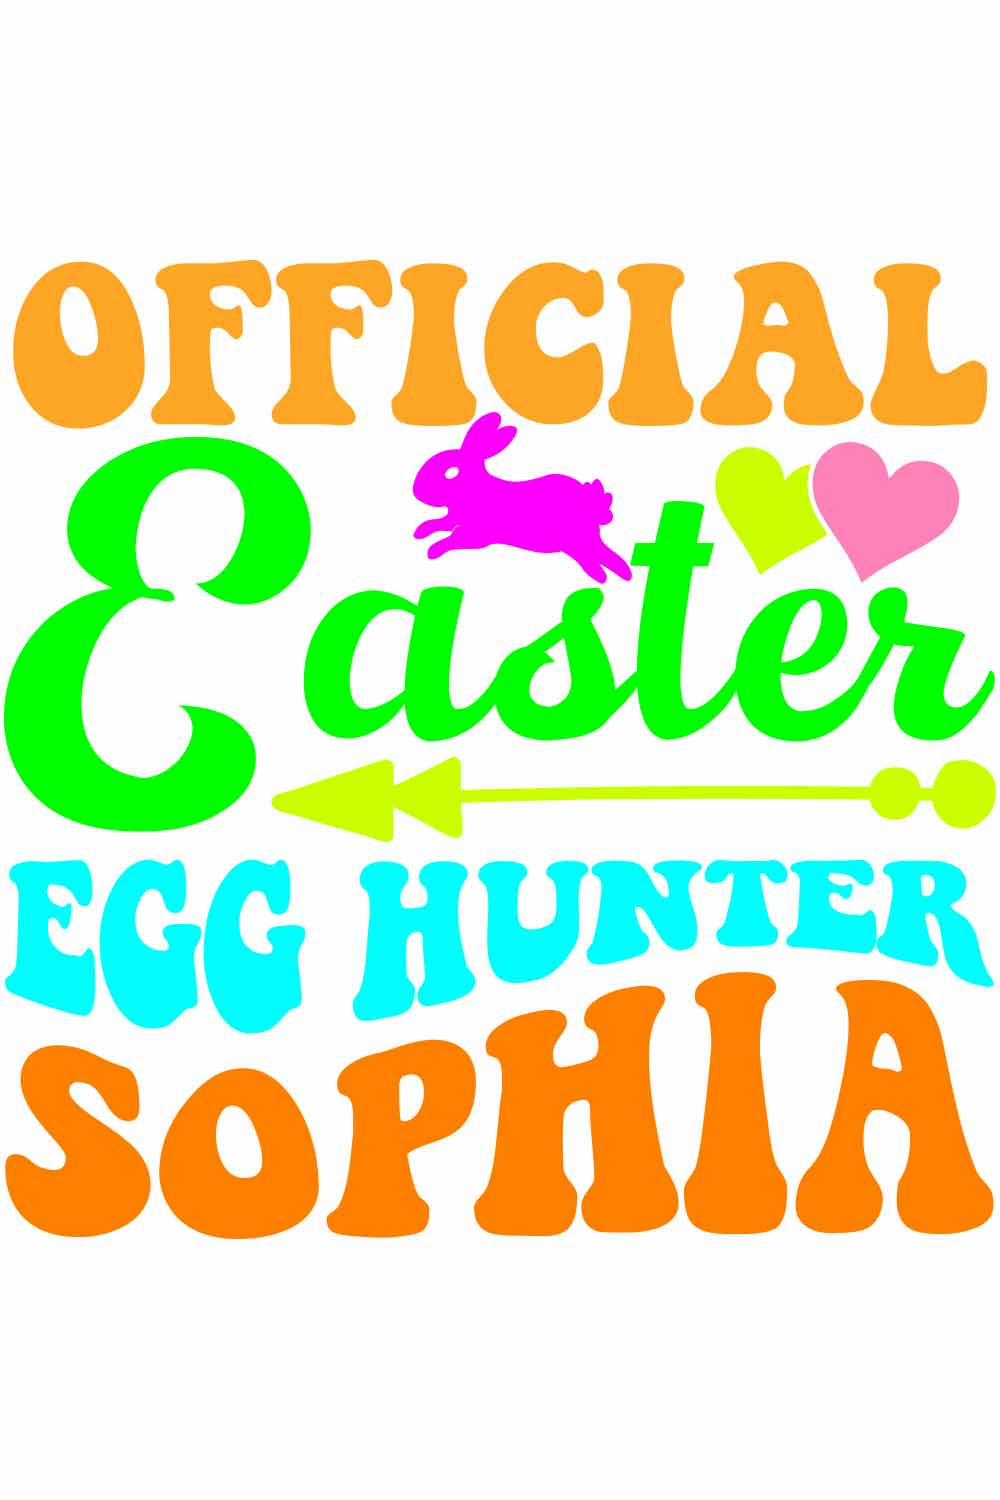 Official Easter Egg Hunter Sophia Retro T-Shirt Designs pinterest preview image.